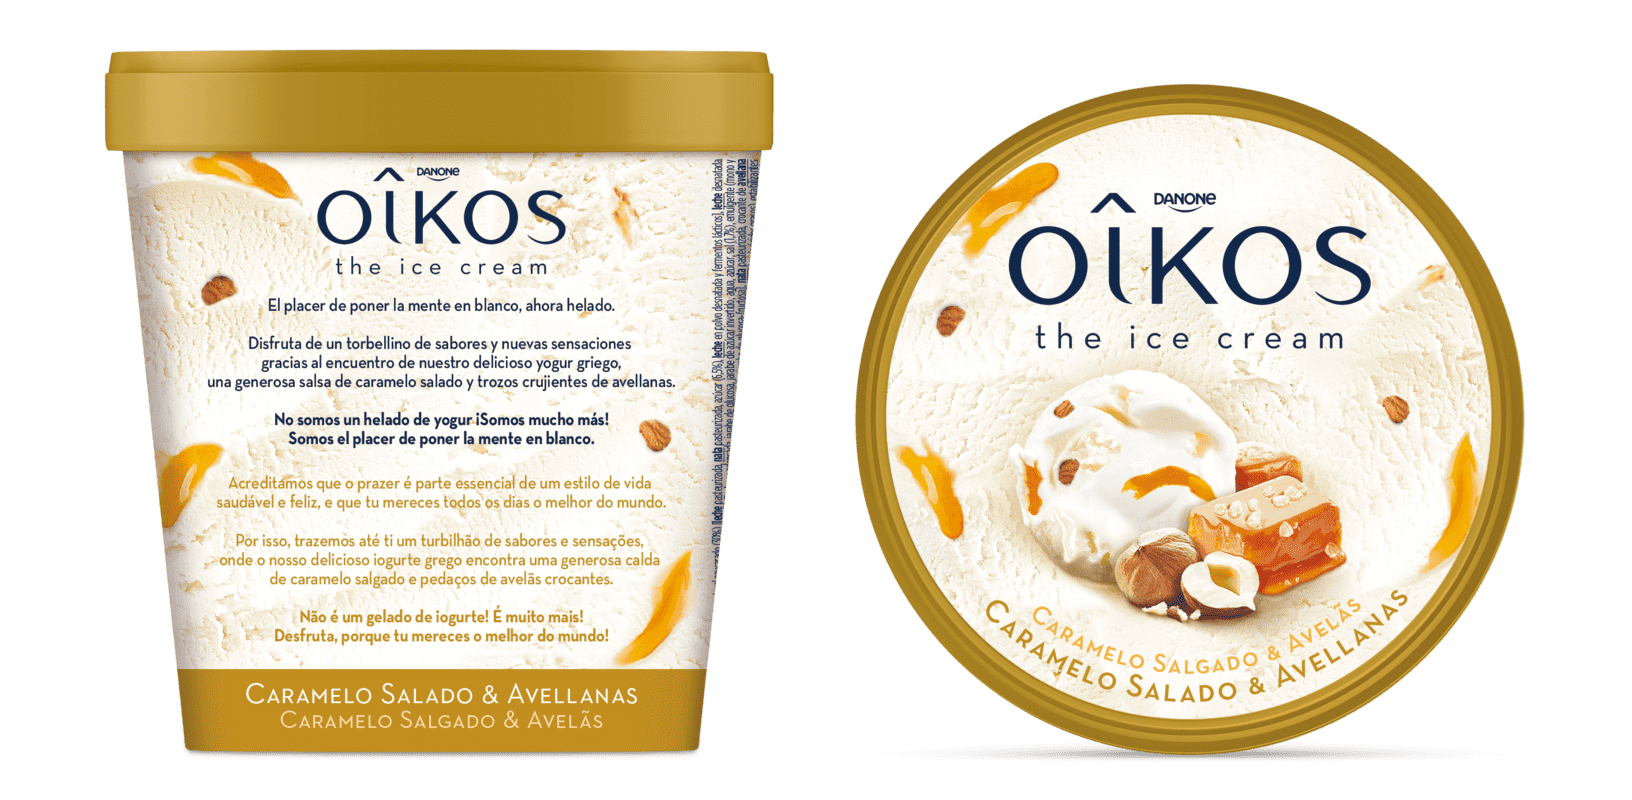 Los primeros helados de Danone con la marca Oikos se fabricarán en